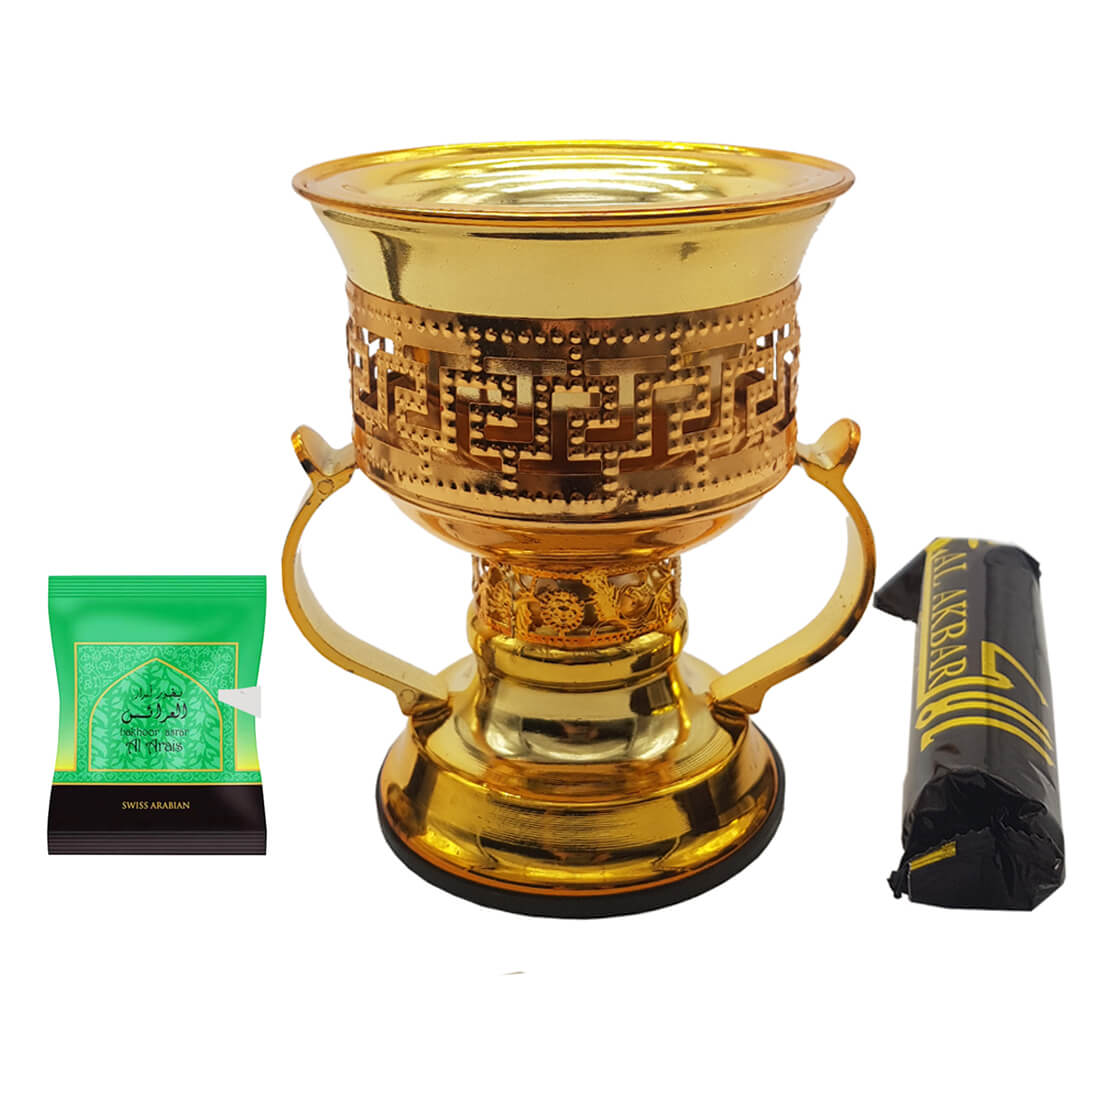 Non Electrical Bakhoor Burner with 10 Coal Coins & 40g Fragrance Paste - Golden